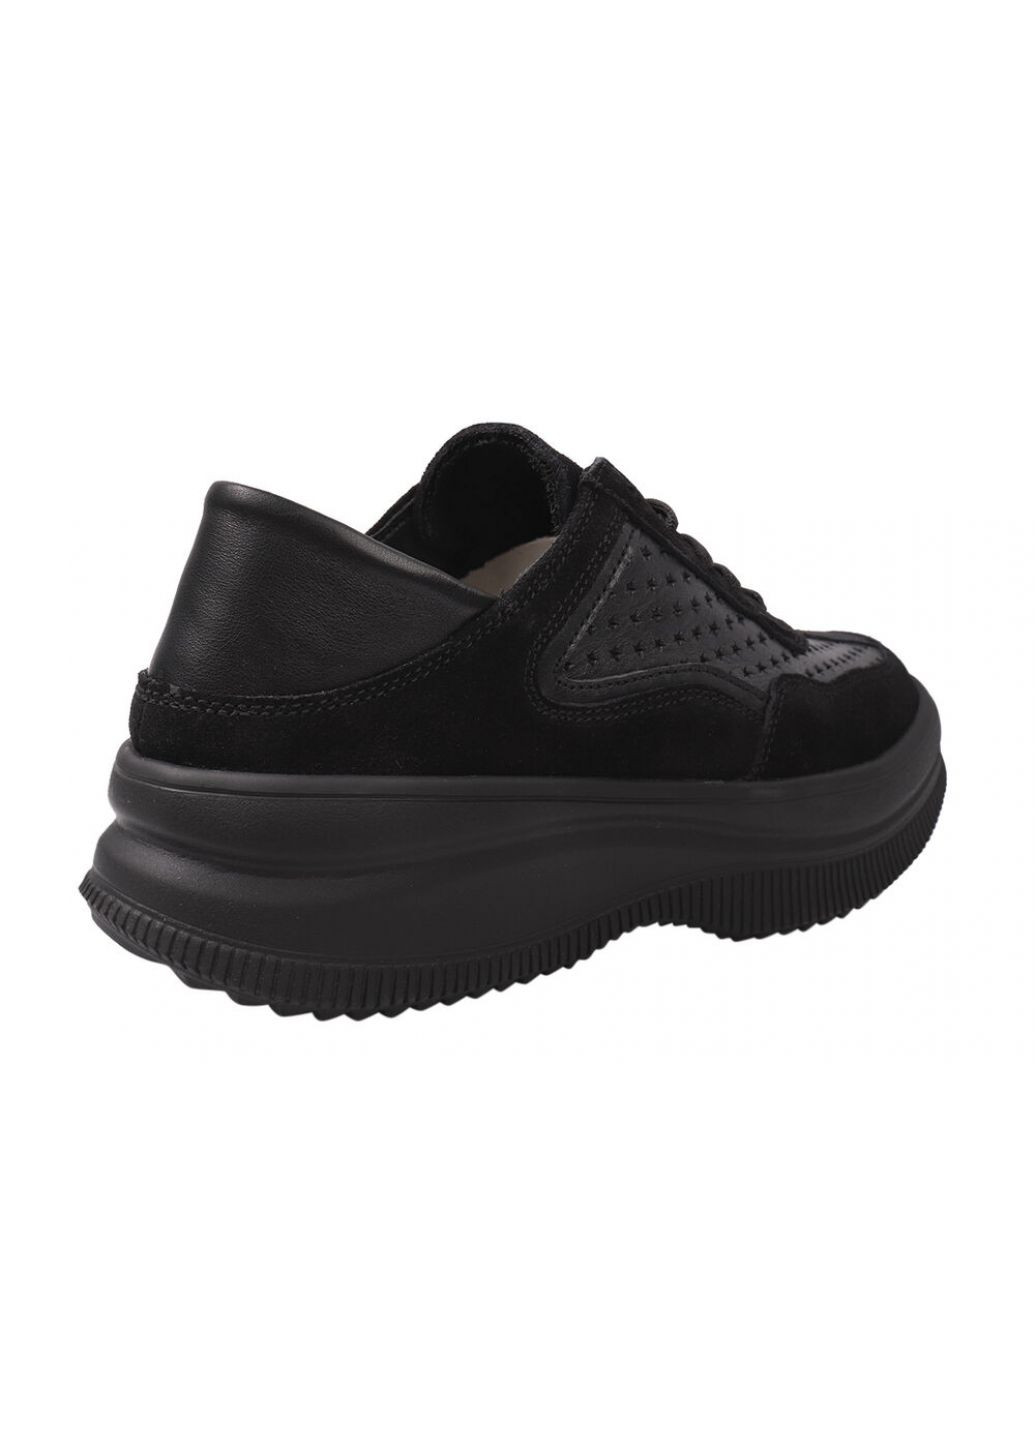 Черные кроссовки женские из натуральной замши, на низком ходу, на шнуровке, цвет черный, Best Vak 62-21DTS